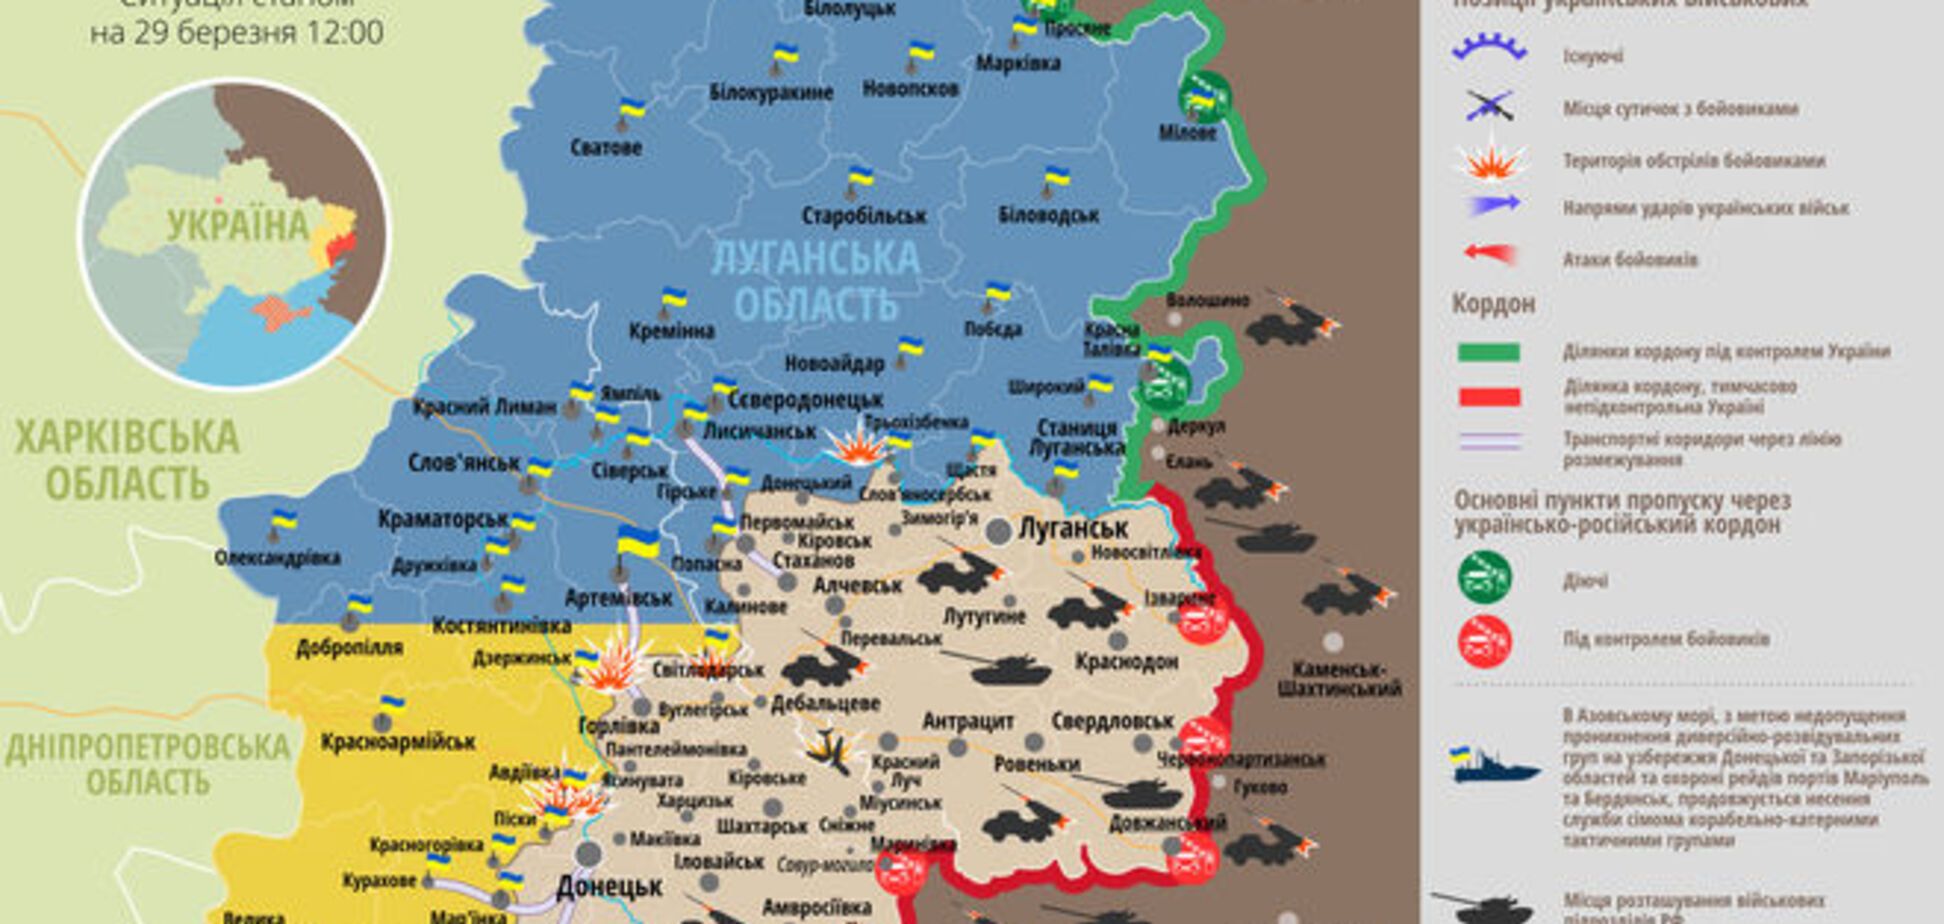 Ситуация на Донбассе стабилизировалась: опубликована актуальная карта зоны АТО